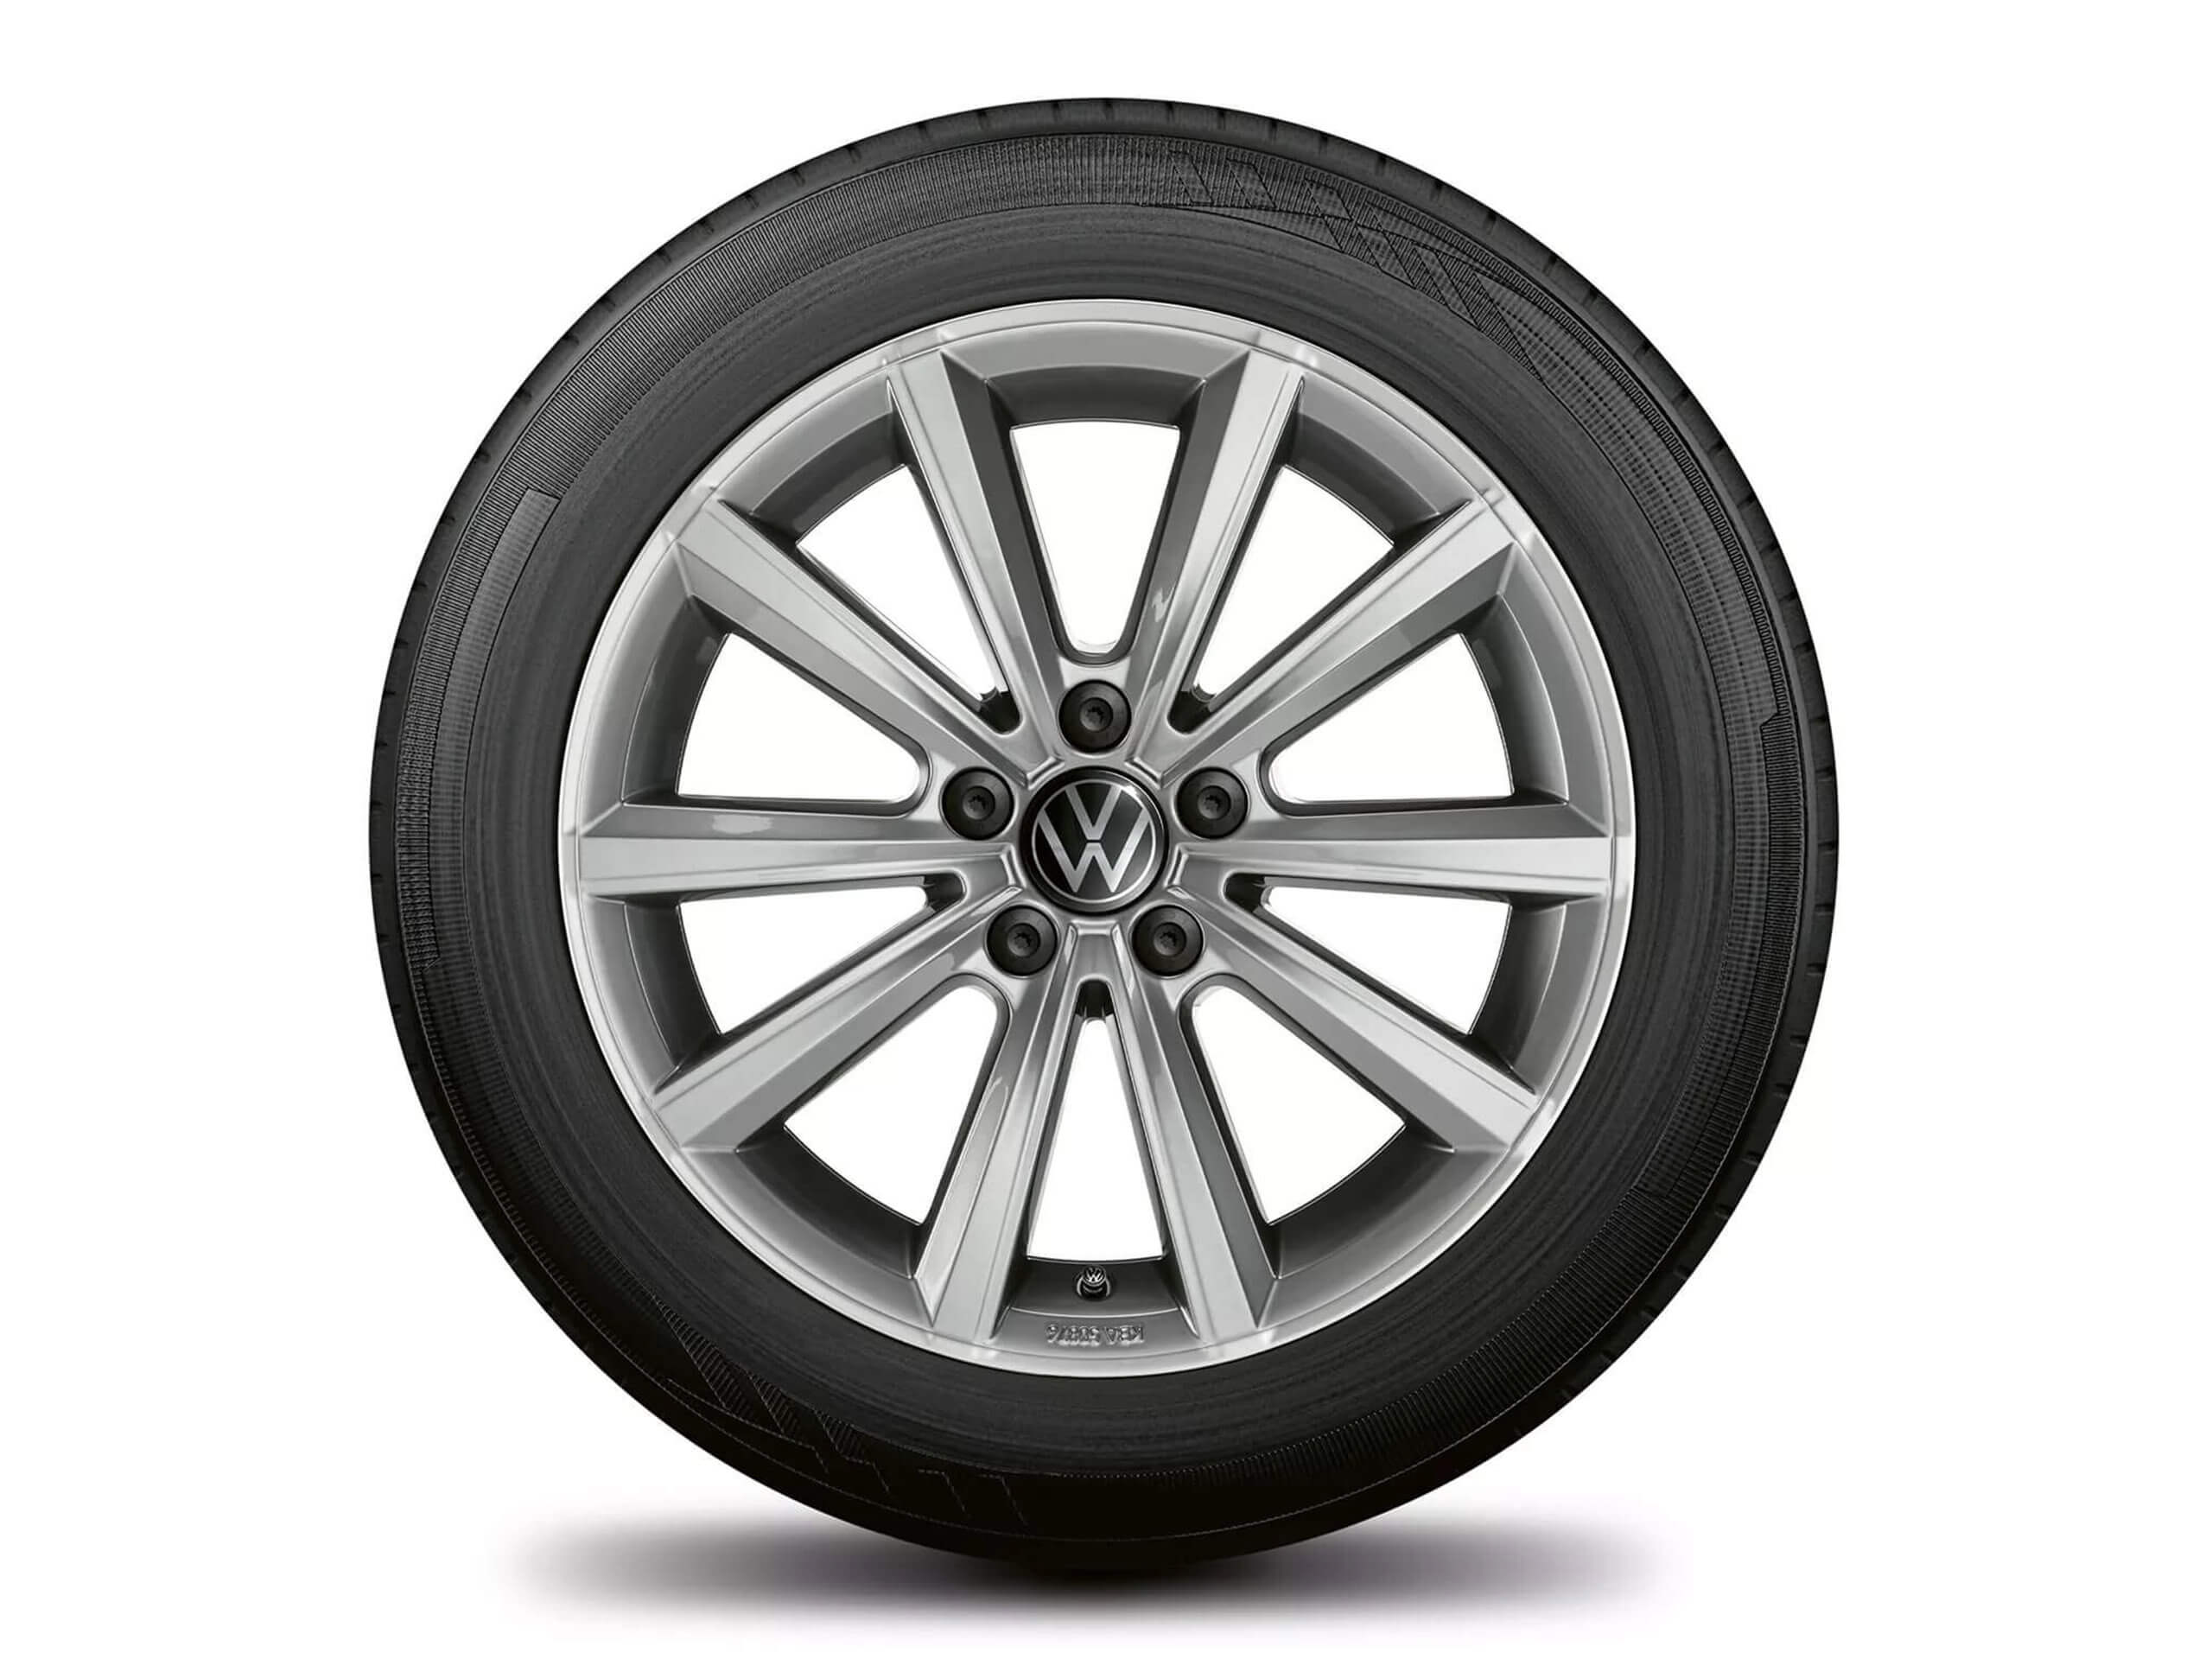 16" Merano alloy wheel